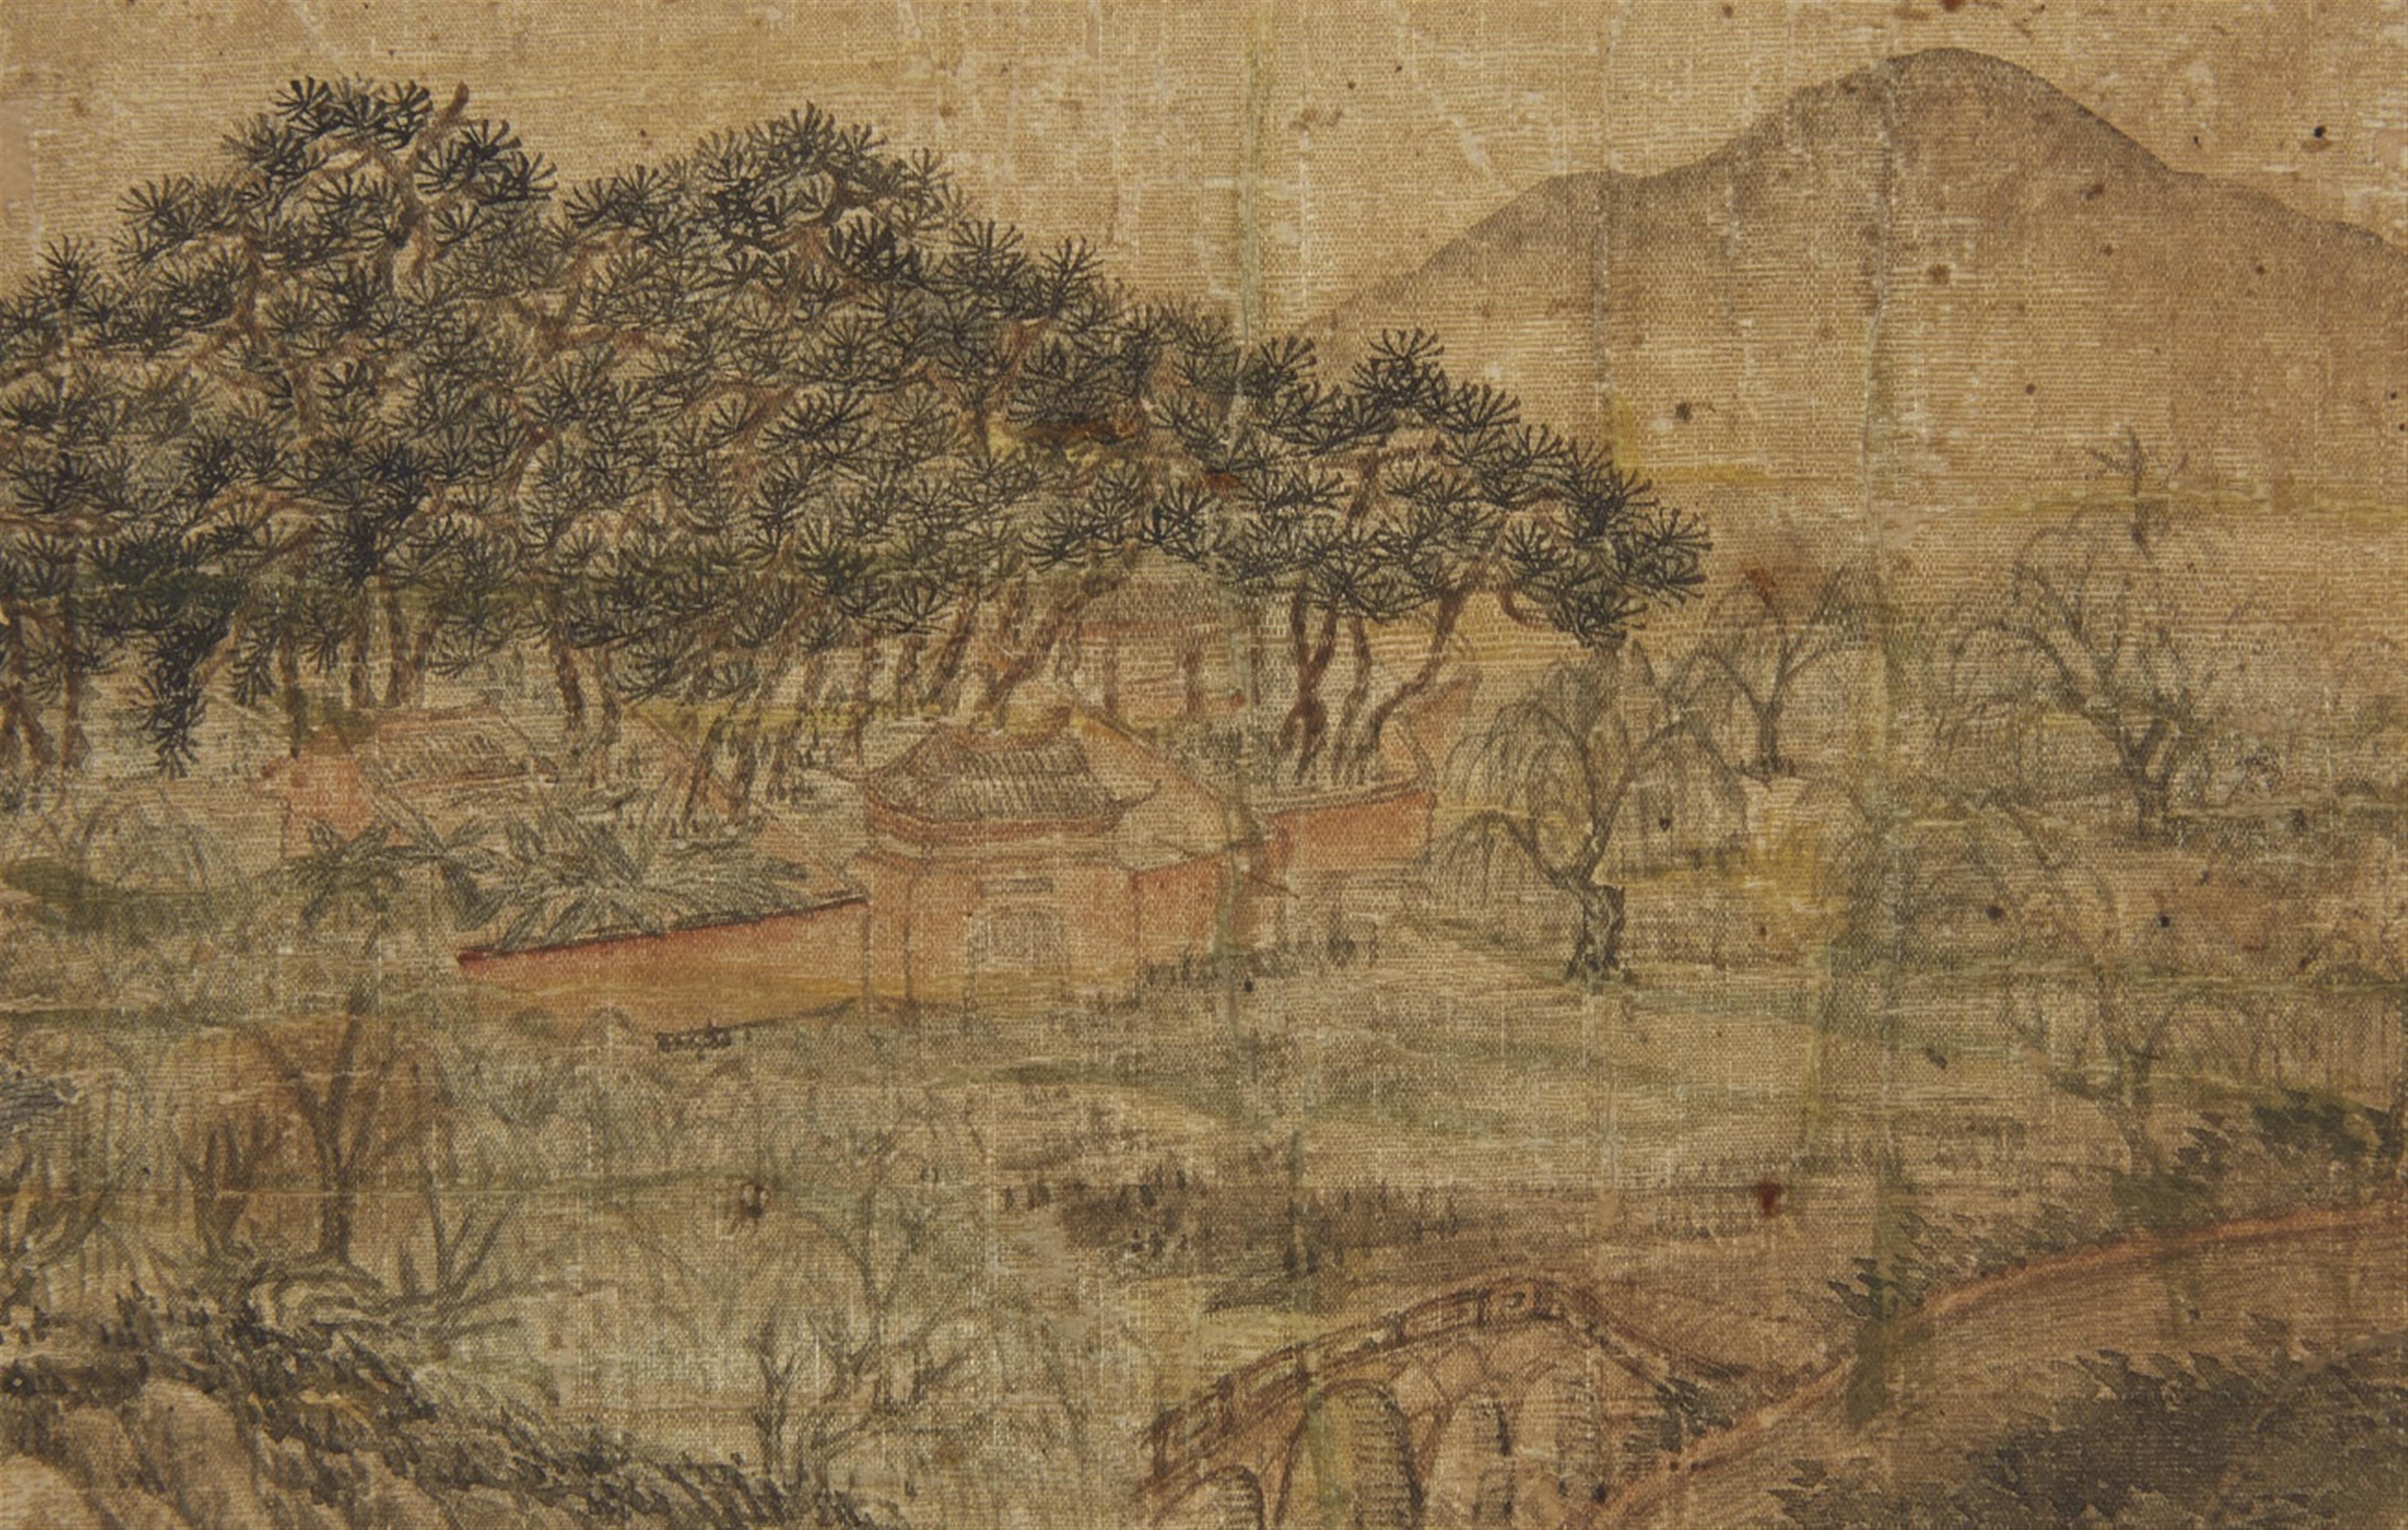 Qian Gu, in der Art - Album mit dem Titel "Ming Qian Gu shanshui ce", bestehend aus sechs losen Doppelseiten mit Landschaftdarstellungen im Stil des Qian Gu (1508-1578). Wasserschäden. Stoff bespannt... - image-3